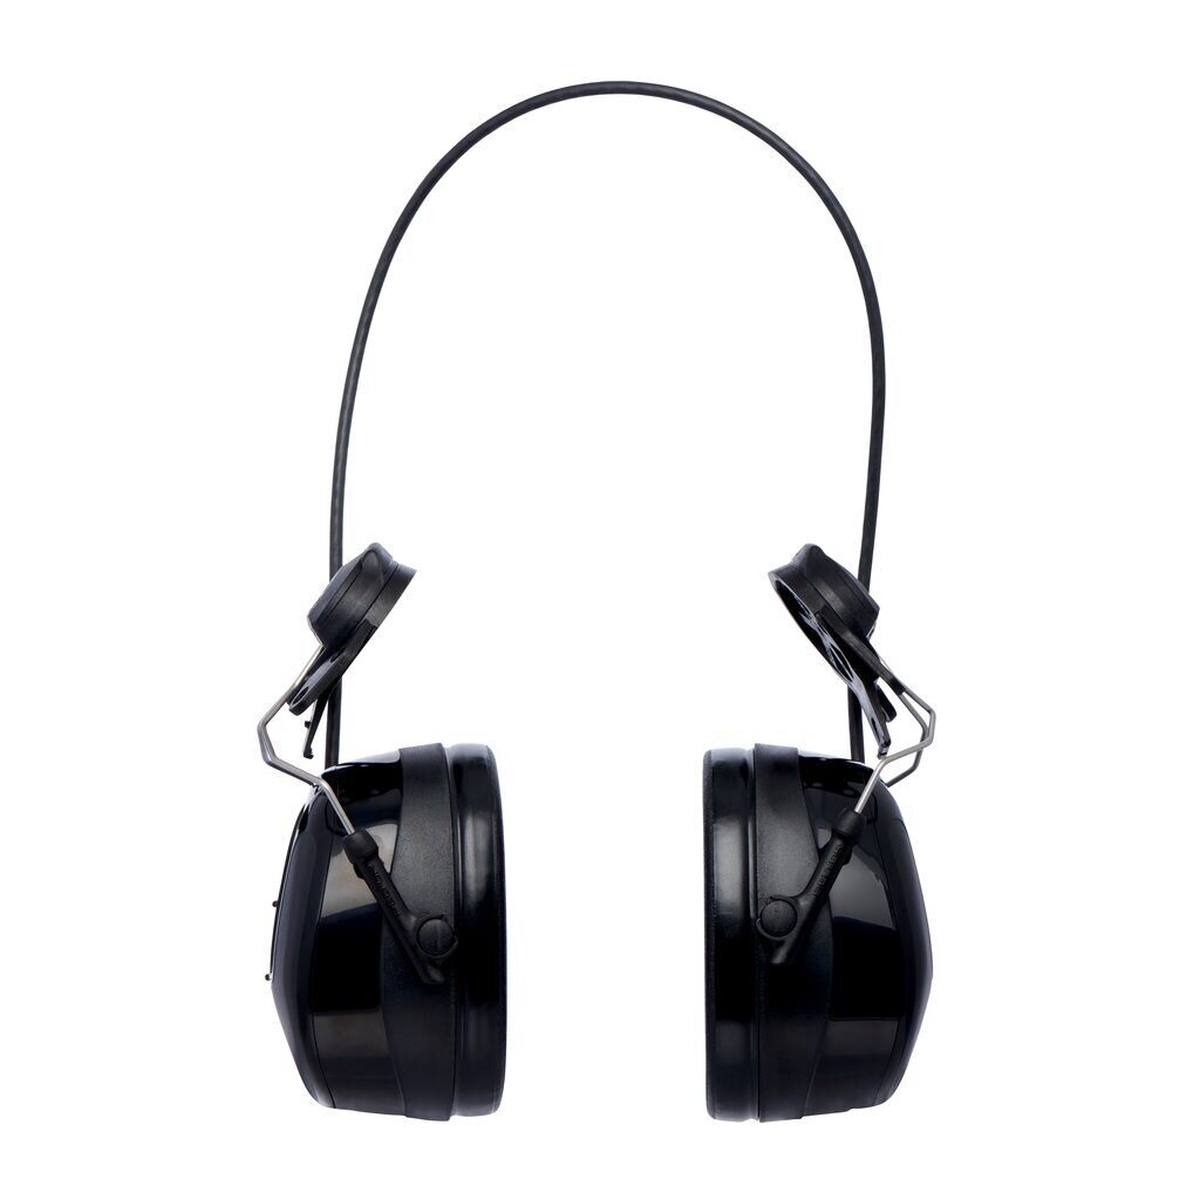 3M PELTOR WorkTunes Pro FM-radio headset met gehoorbescherming, helmbevestiging, zwart